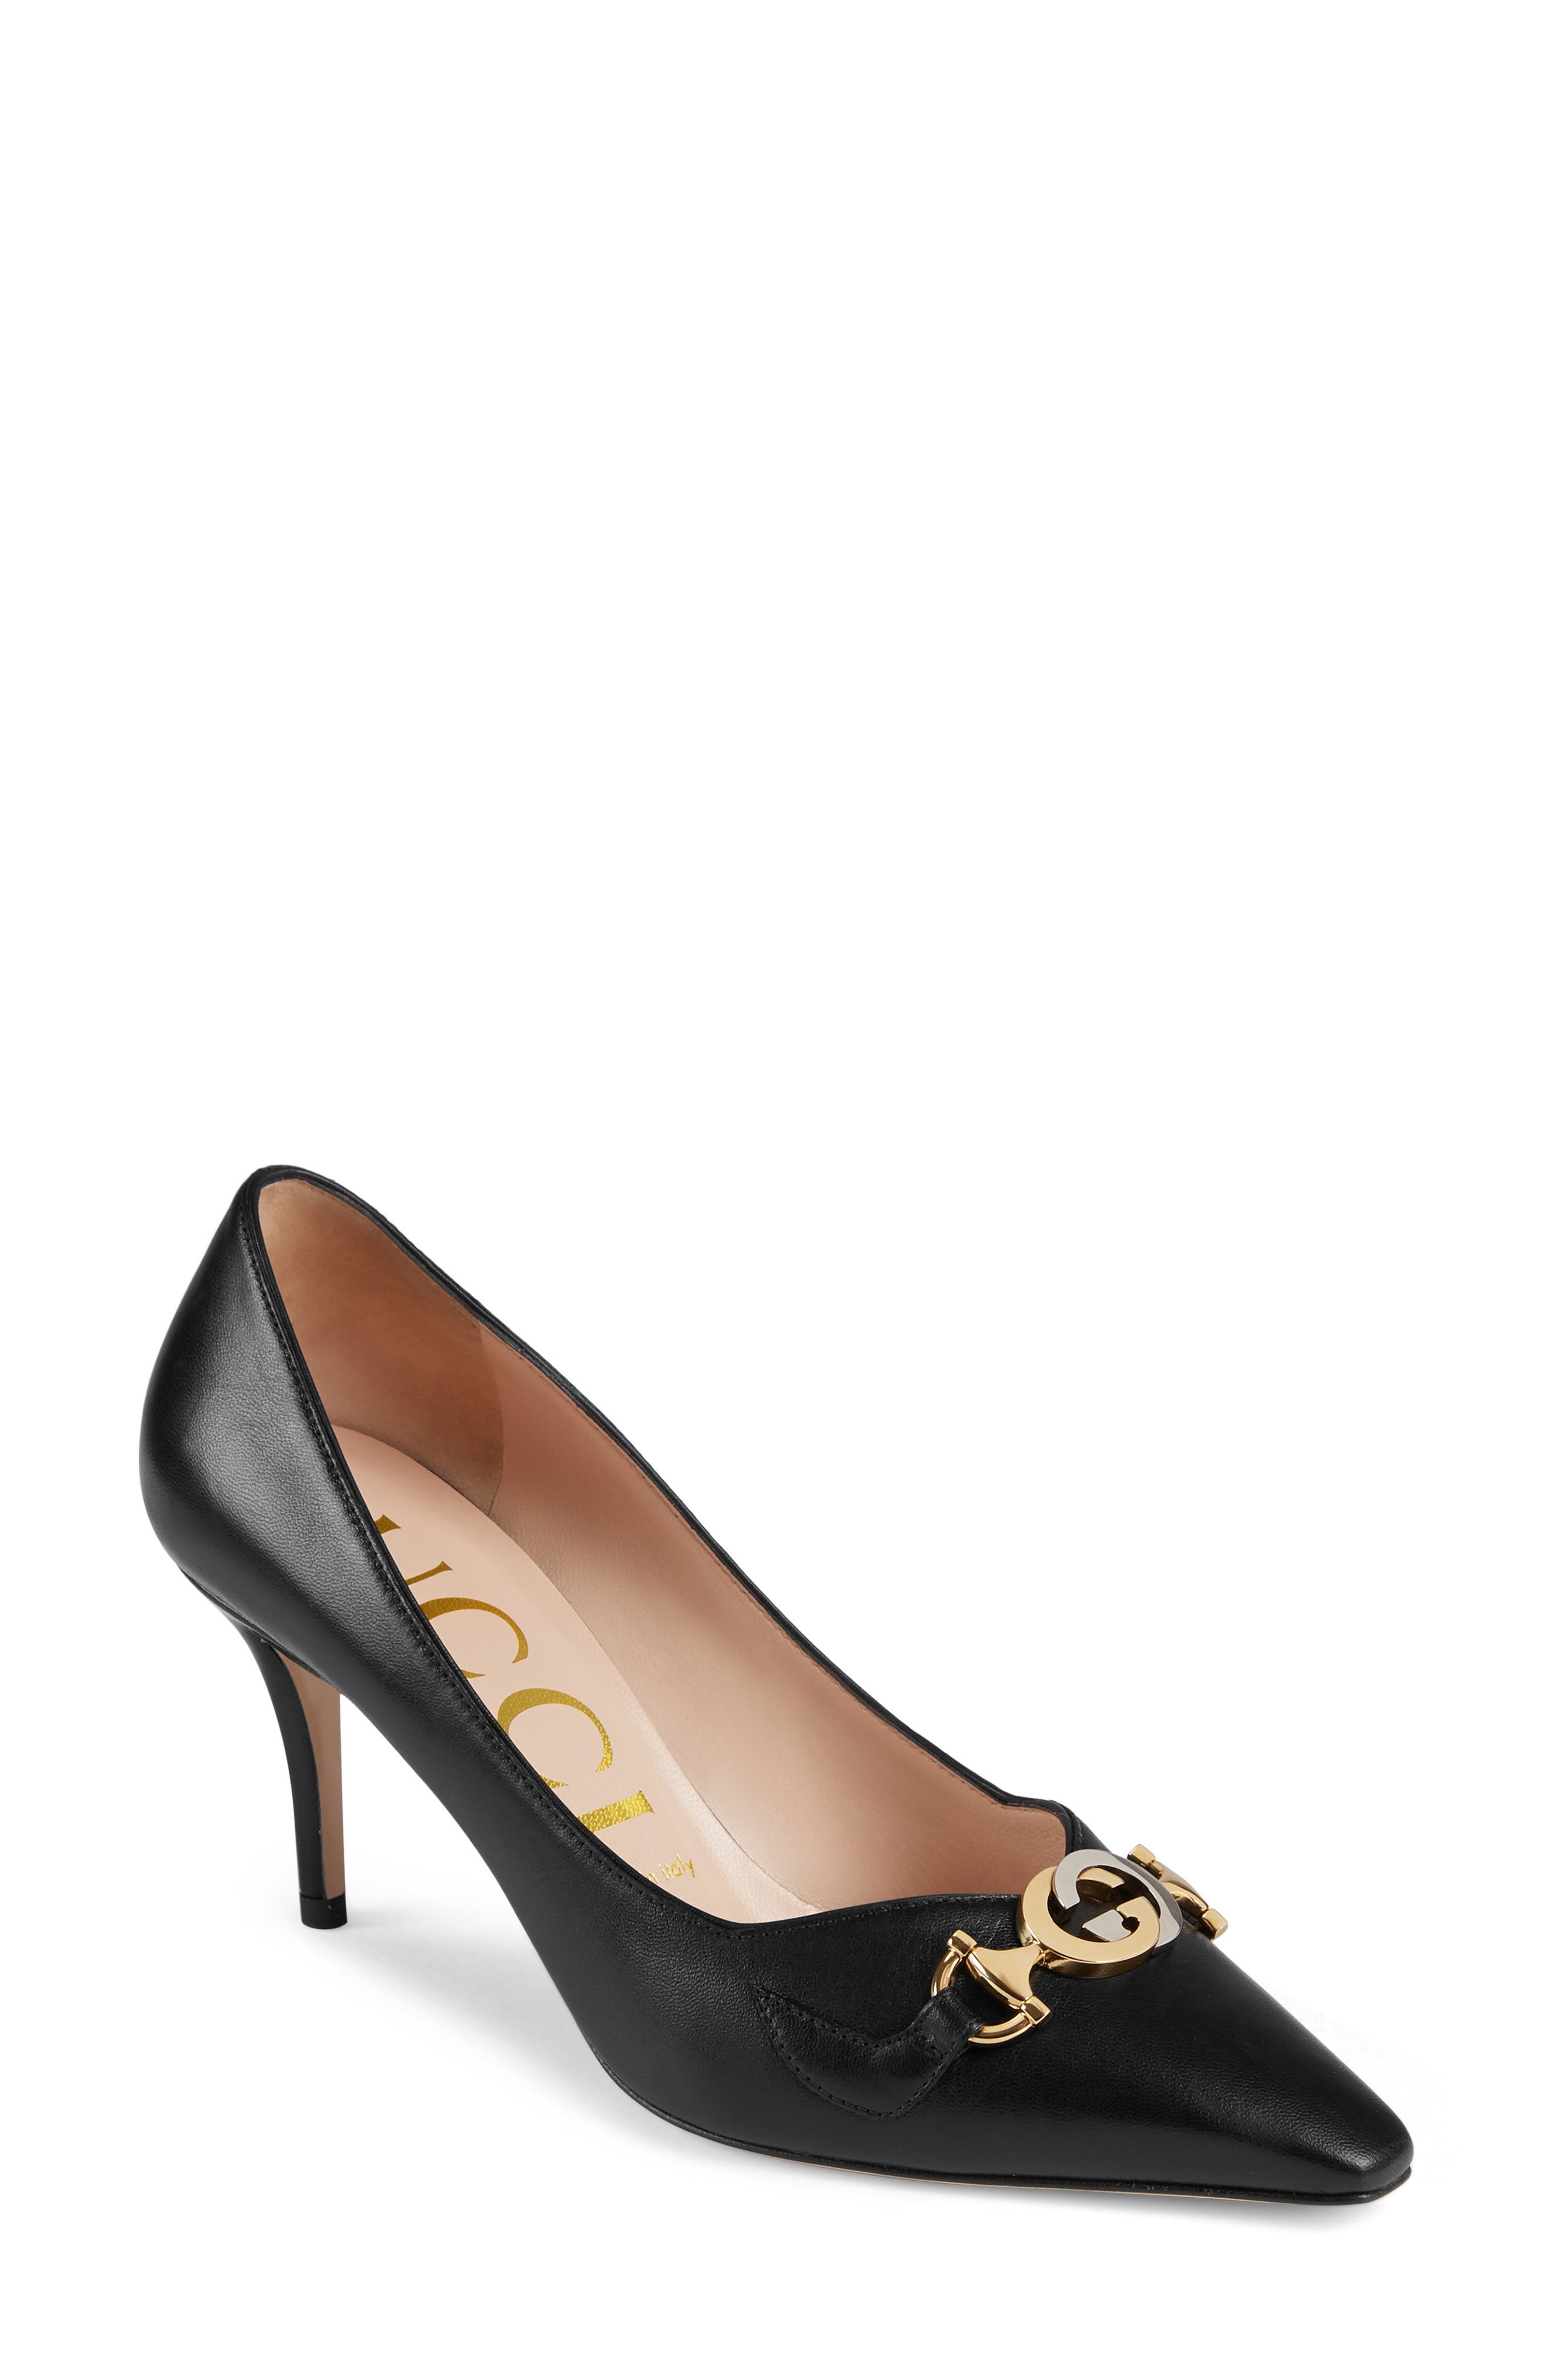 gucci shoes black heels